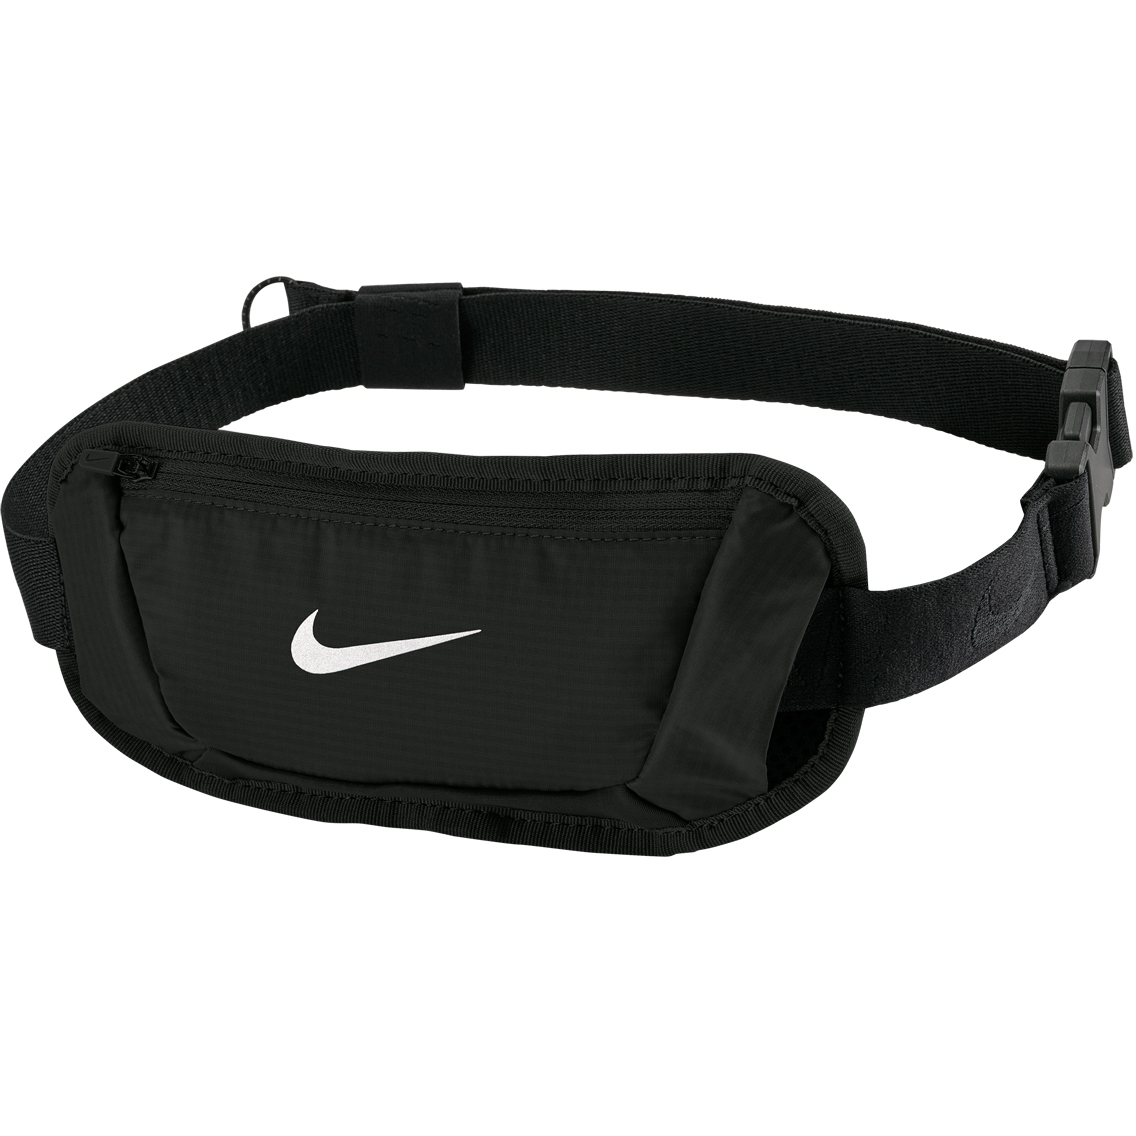 Produktbild von Nike Challenger 2.0 Hüfttasche - Small - schwarz/schwarz/weiß